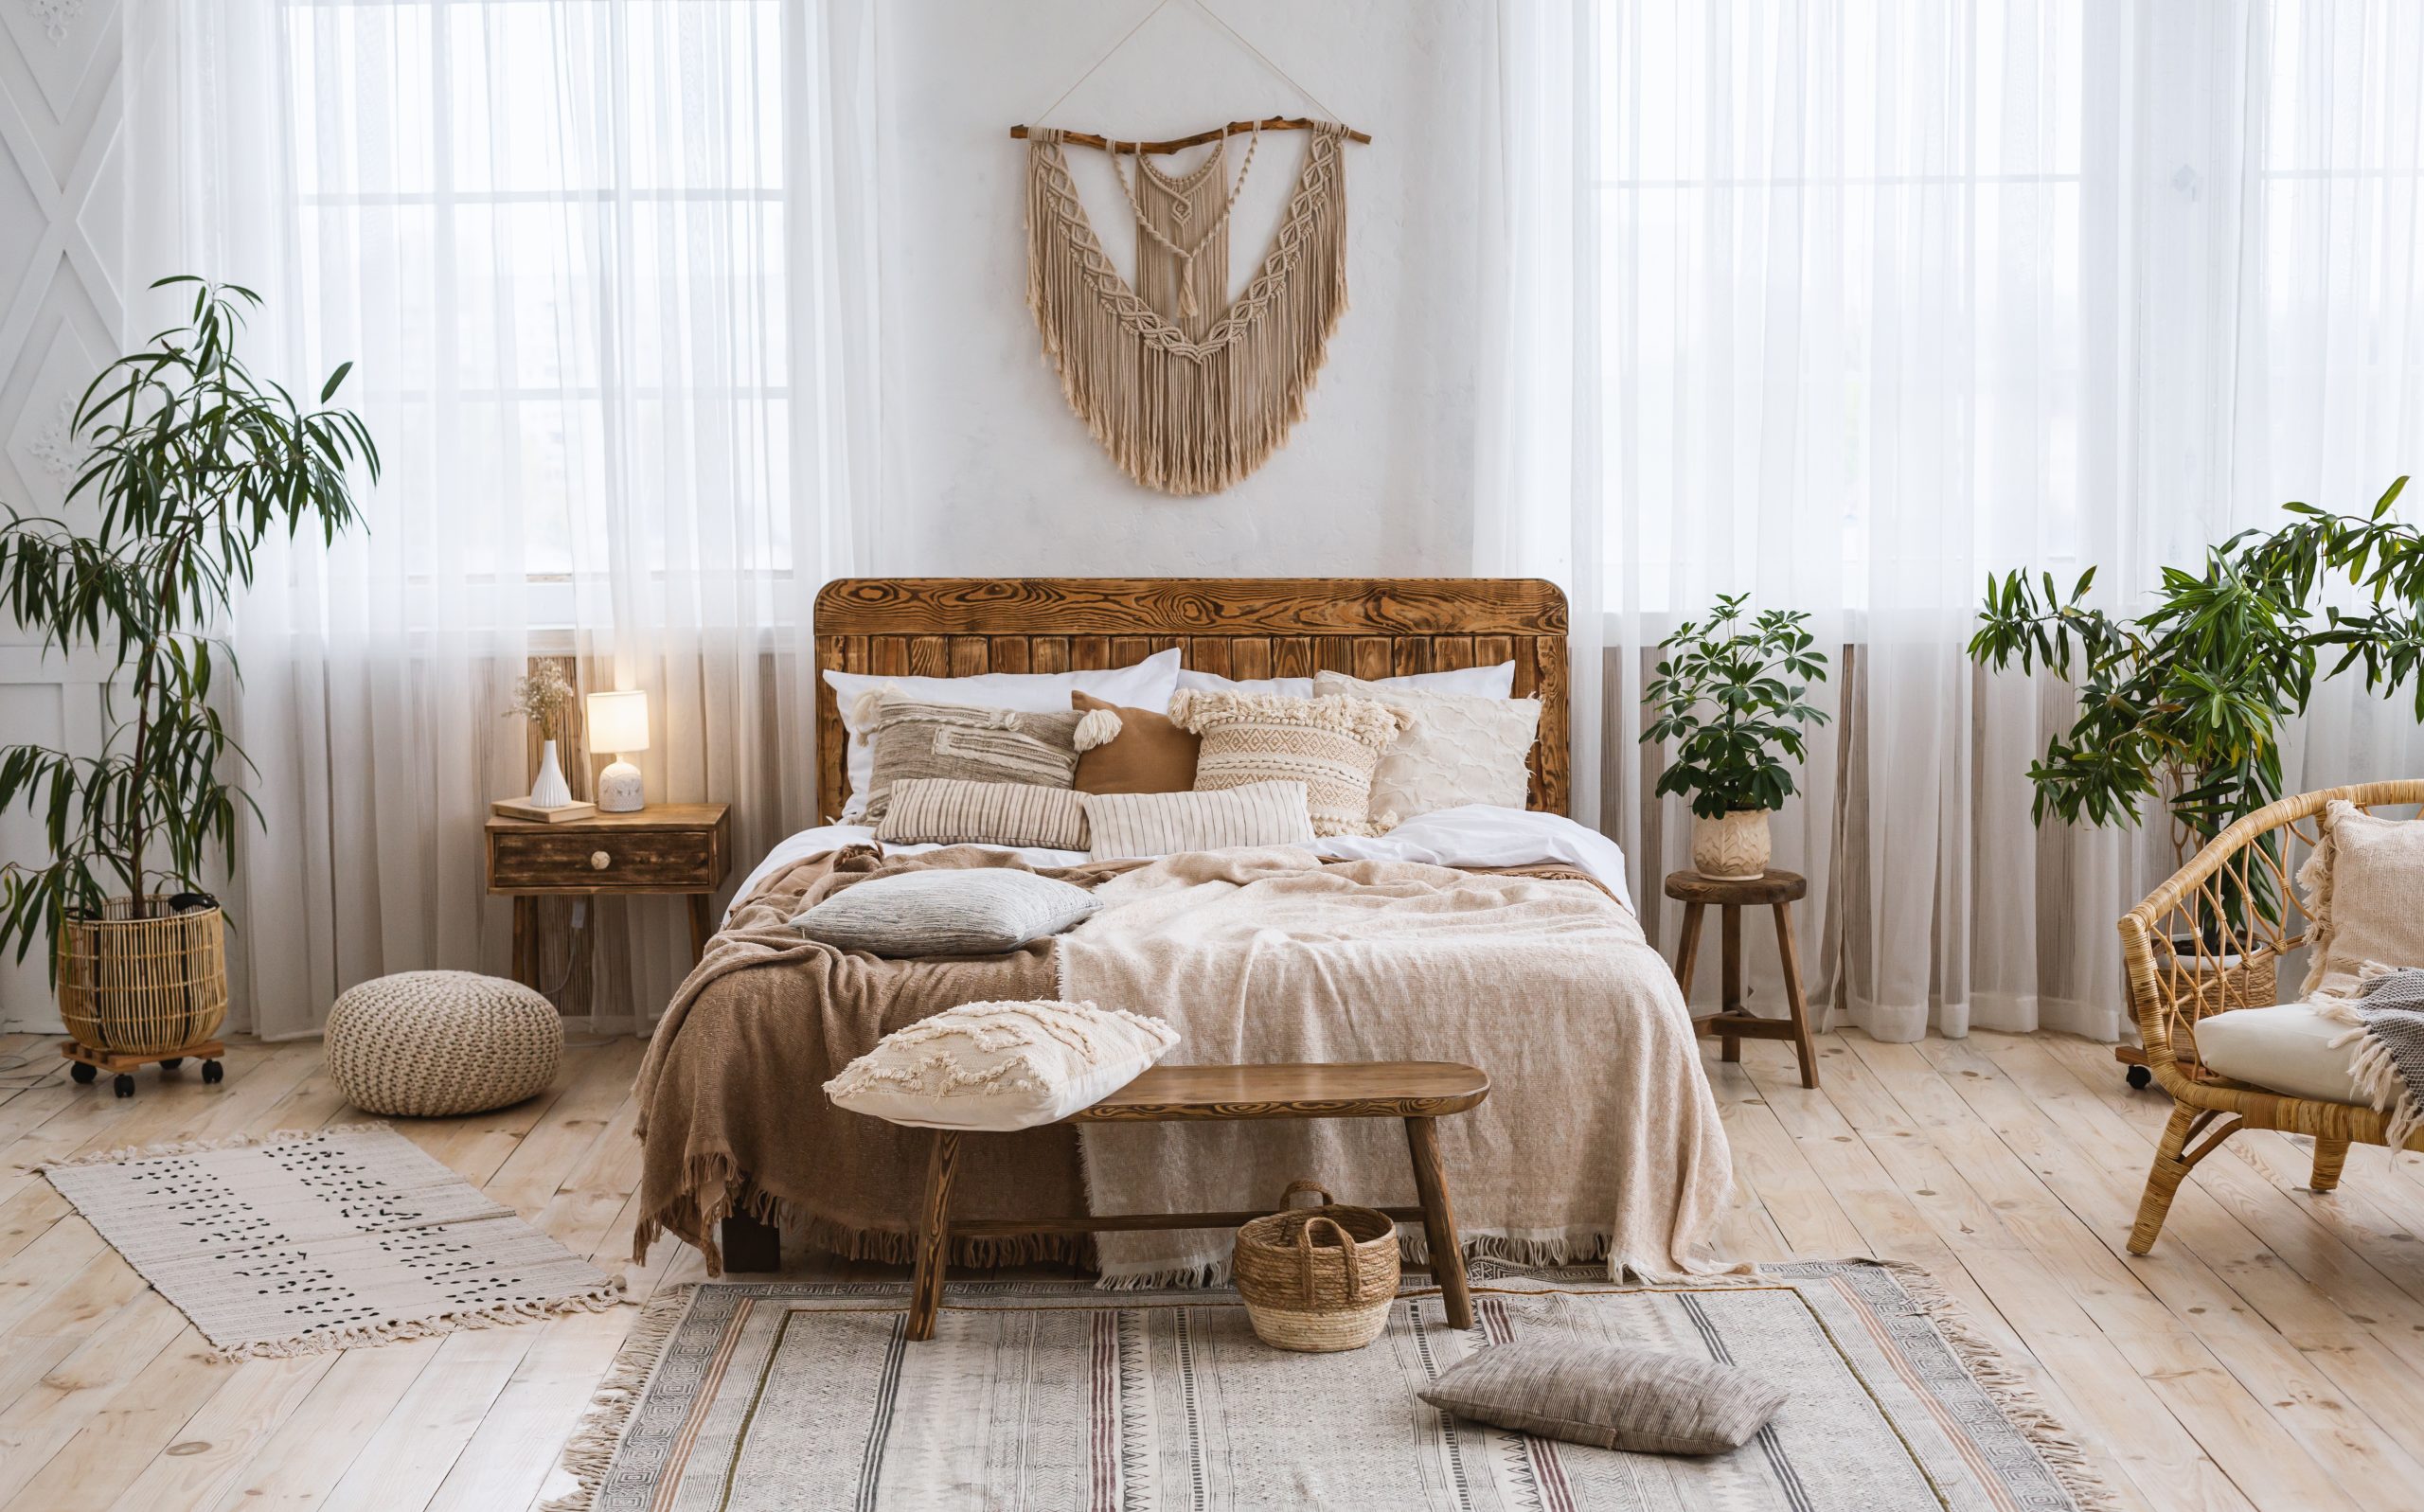 Cozy Minimal Bedroom Decor